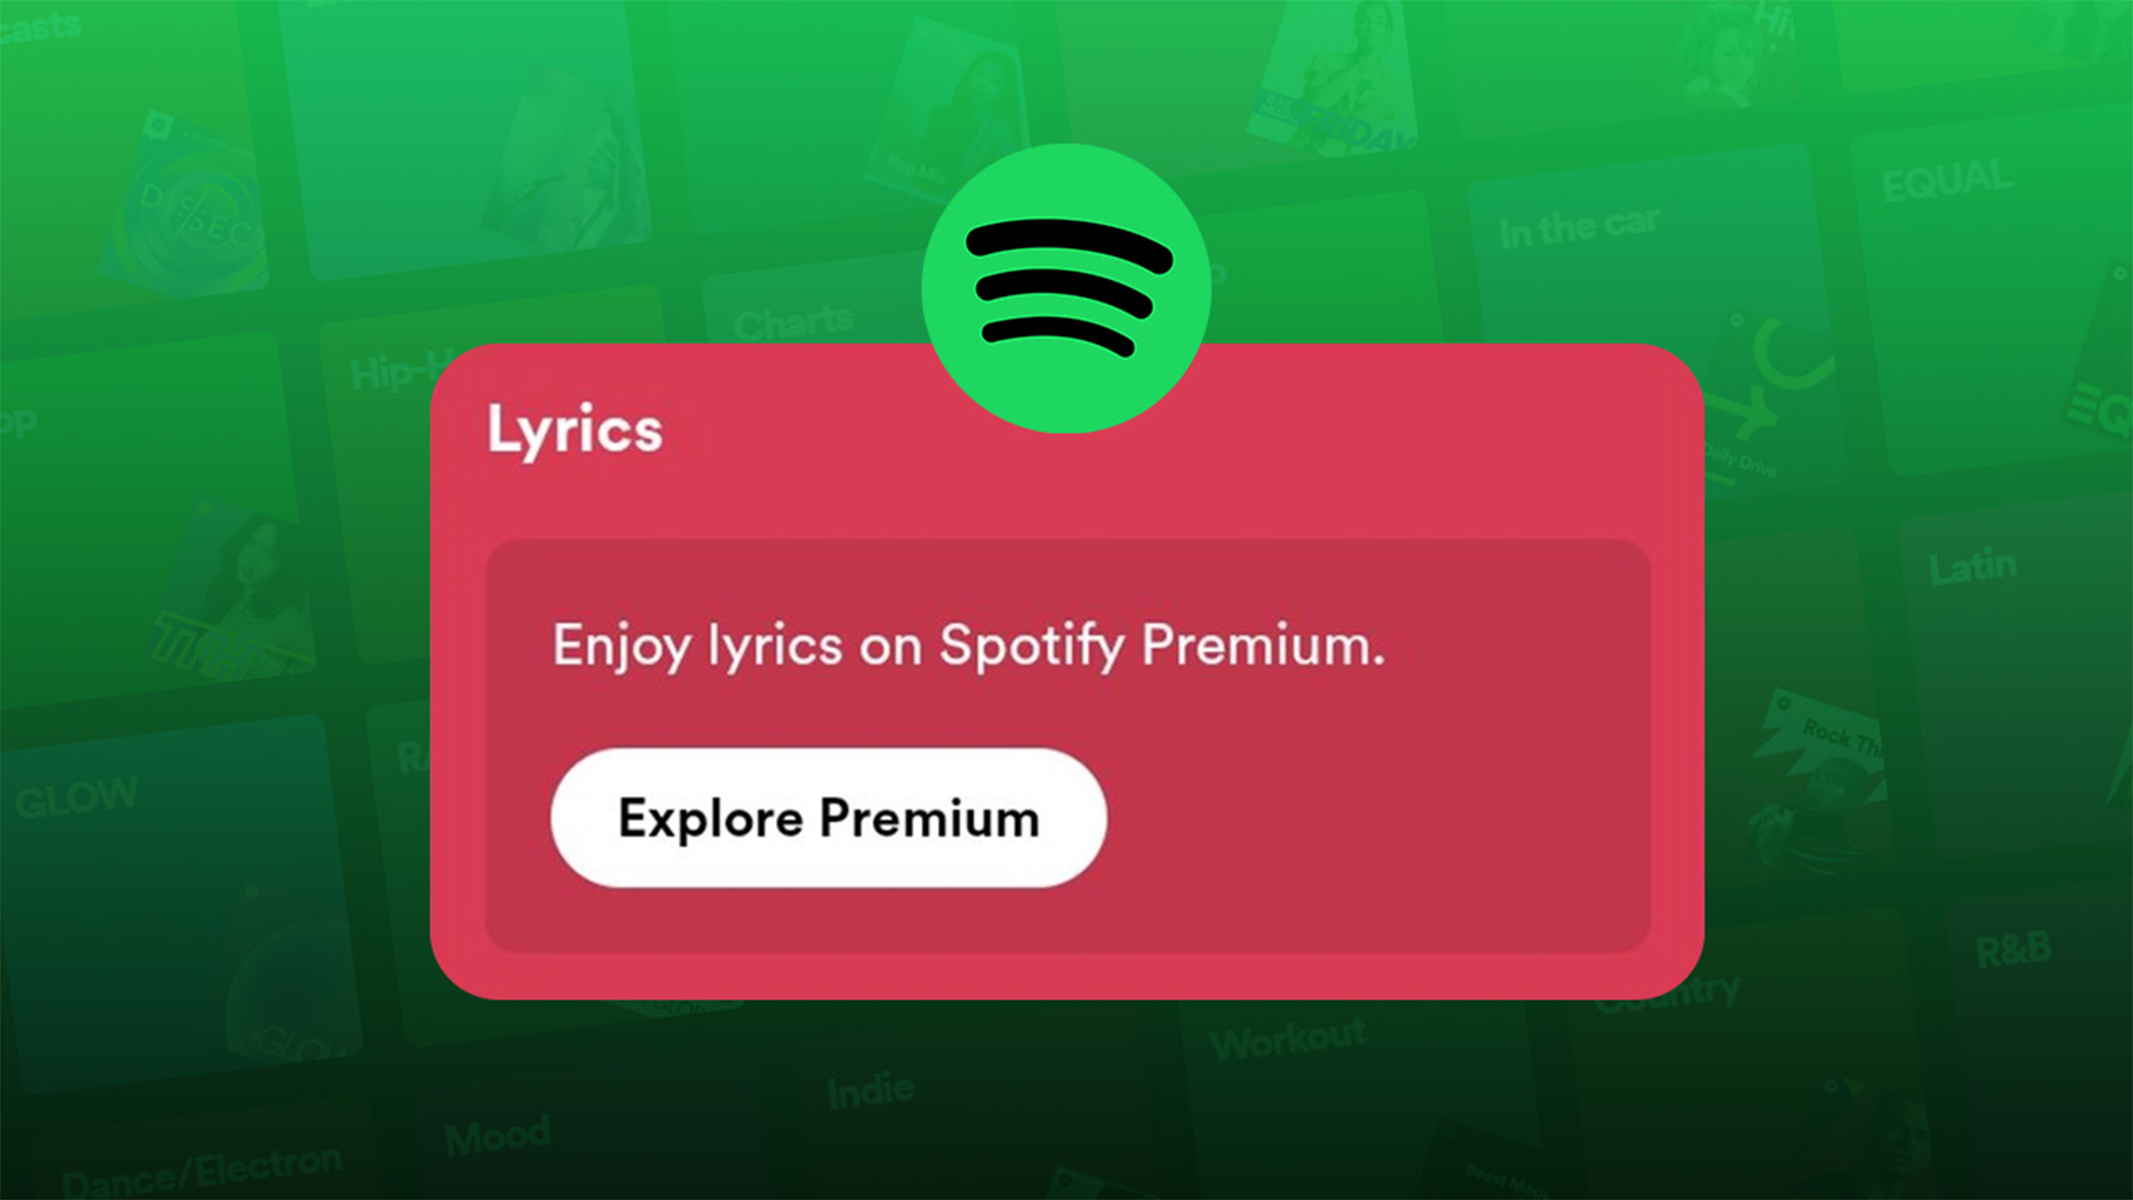 Spotify rimuove la funzione lyrics da alcuni utenti non Premium 1 1